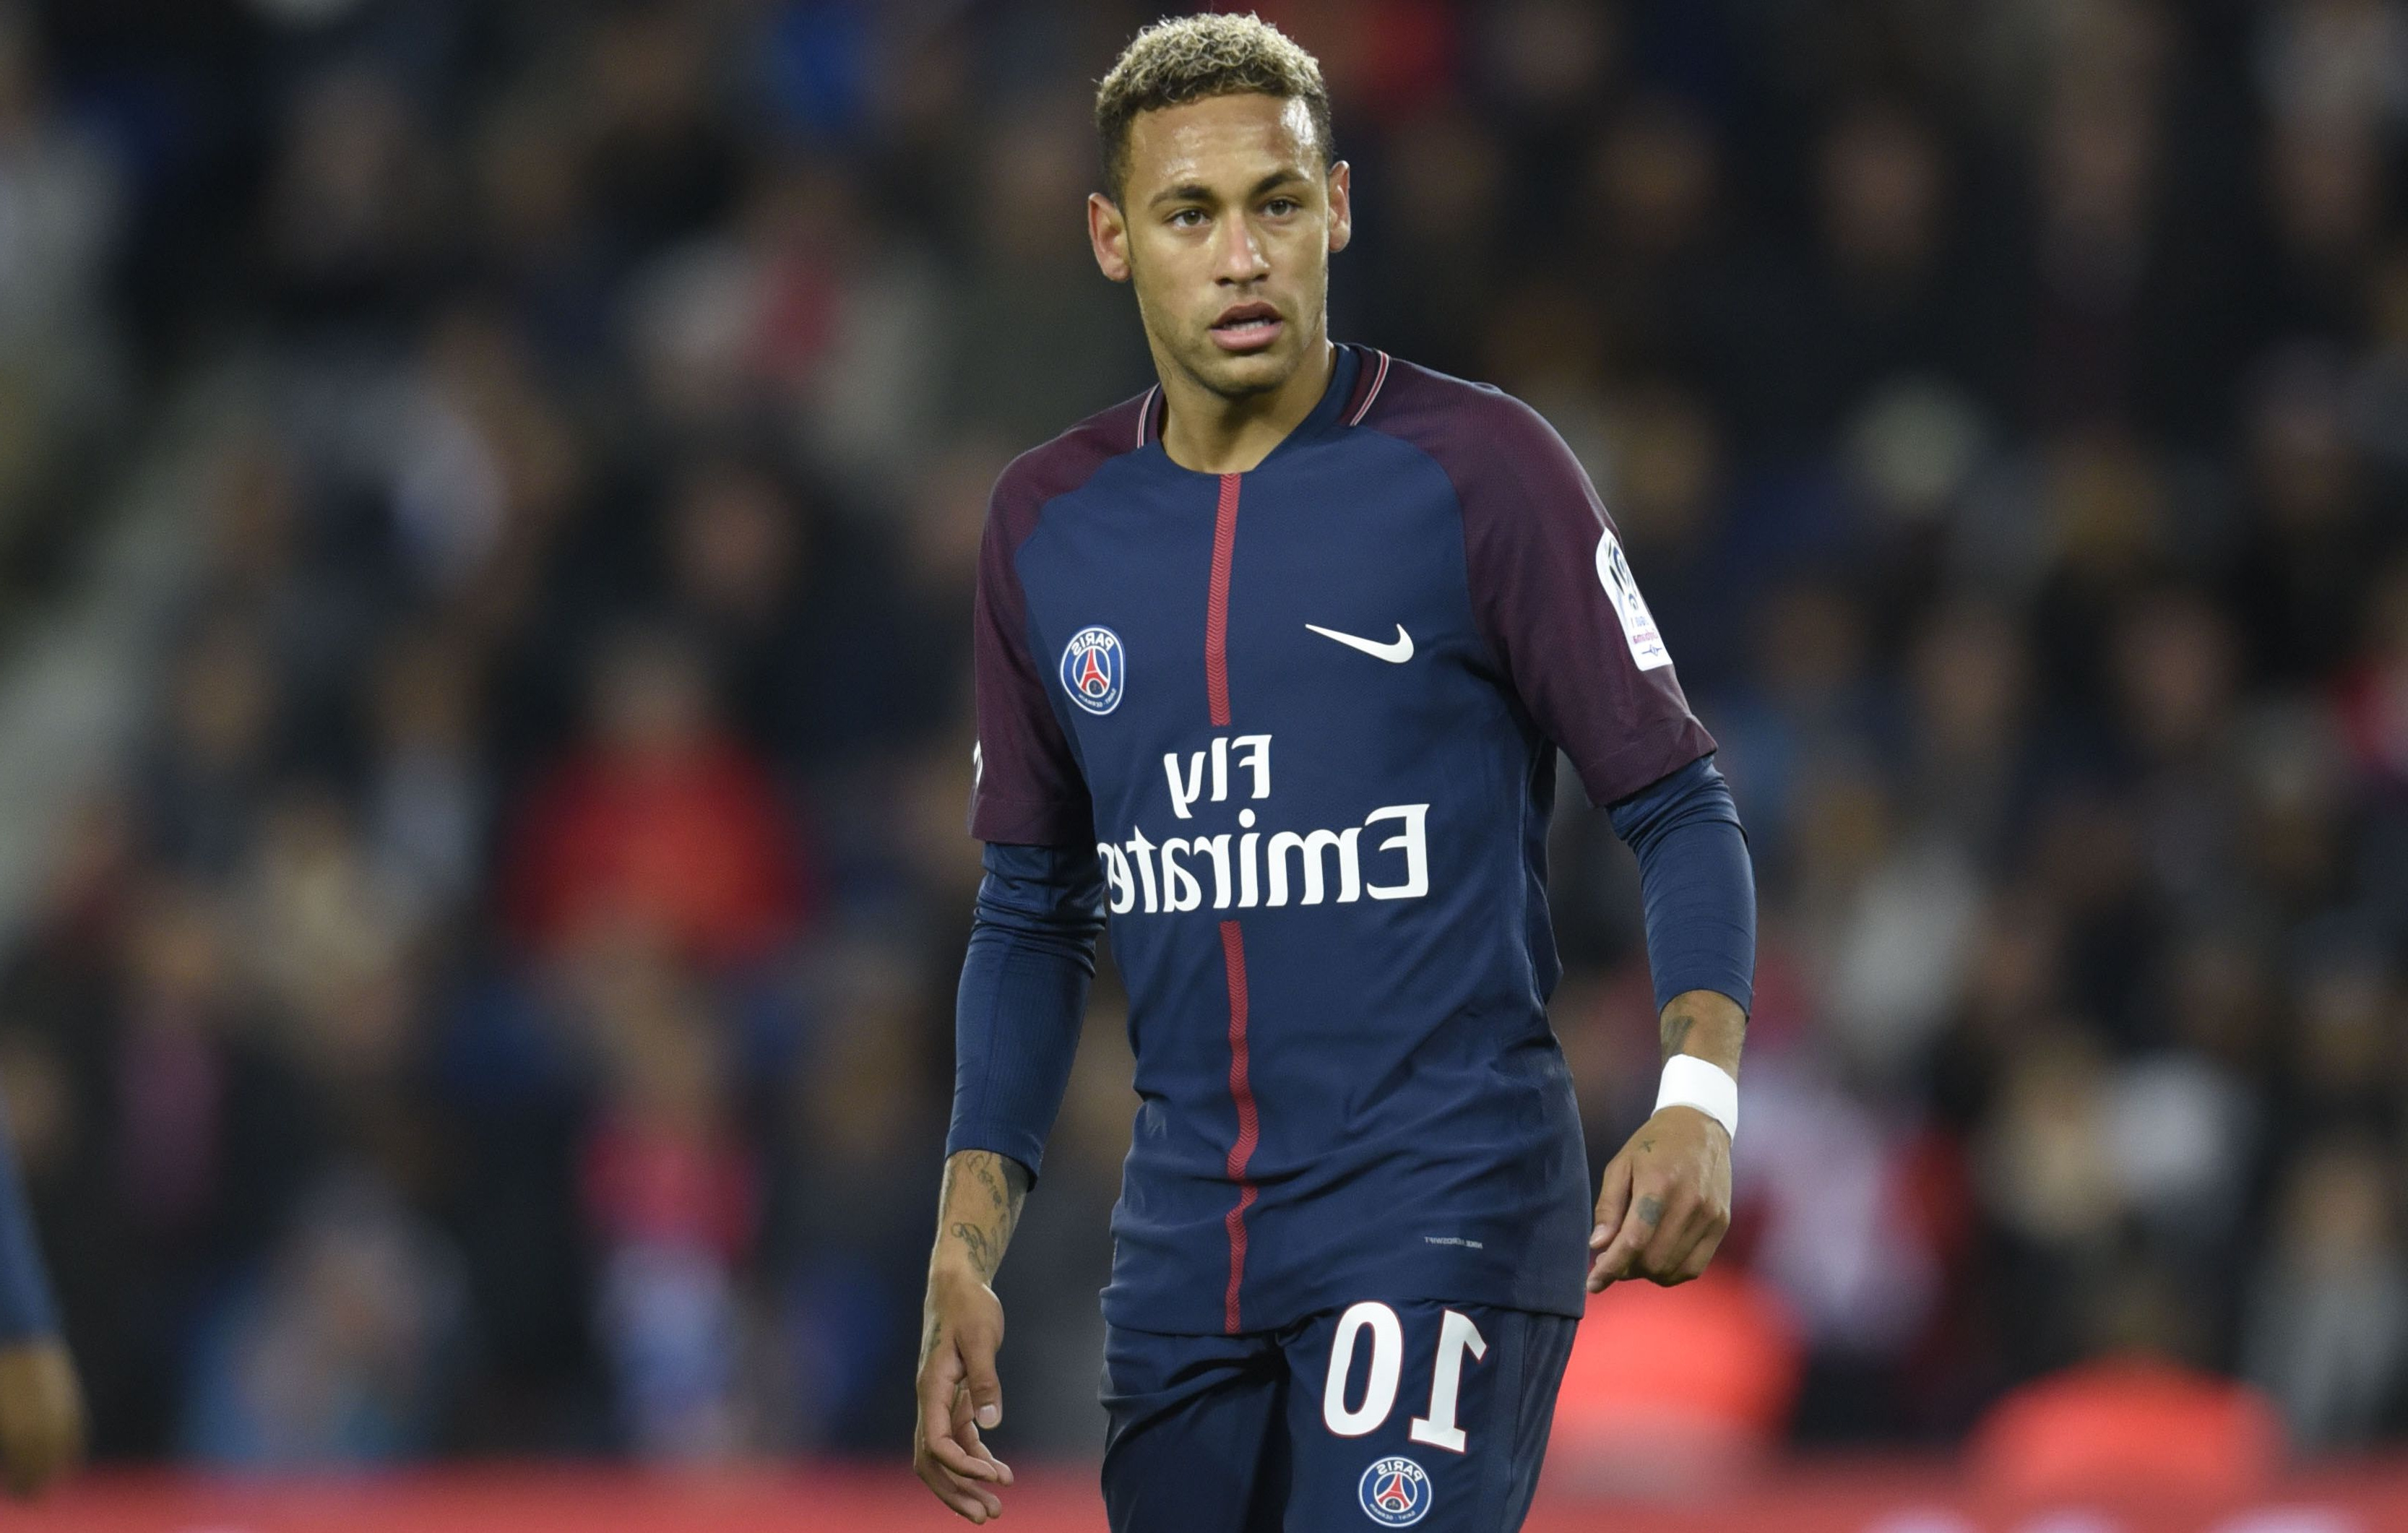 Coloriage Neymar Psg Cool Images Psg Neymar forfait à Montpellier Ligue 1 Football